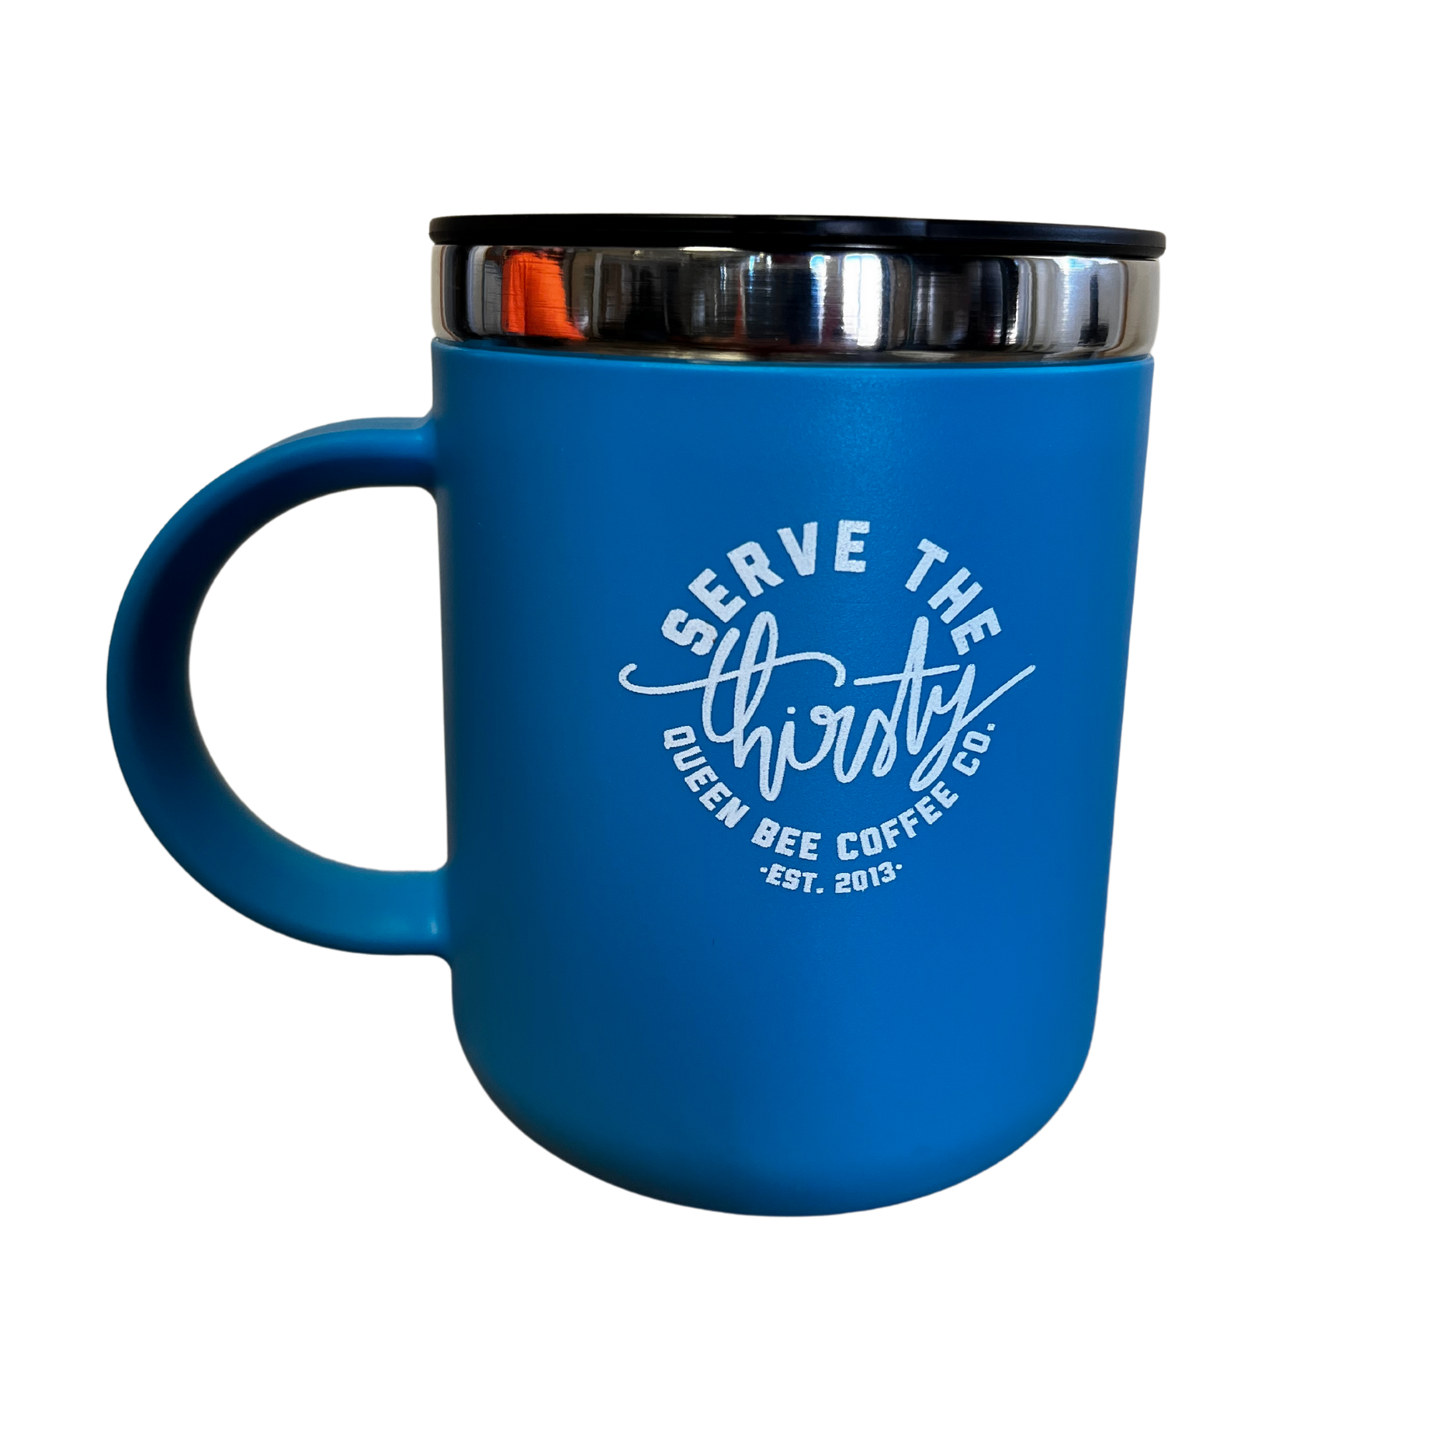 Hydro Flask Blue Travel Mugs